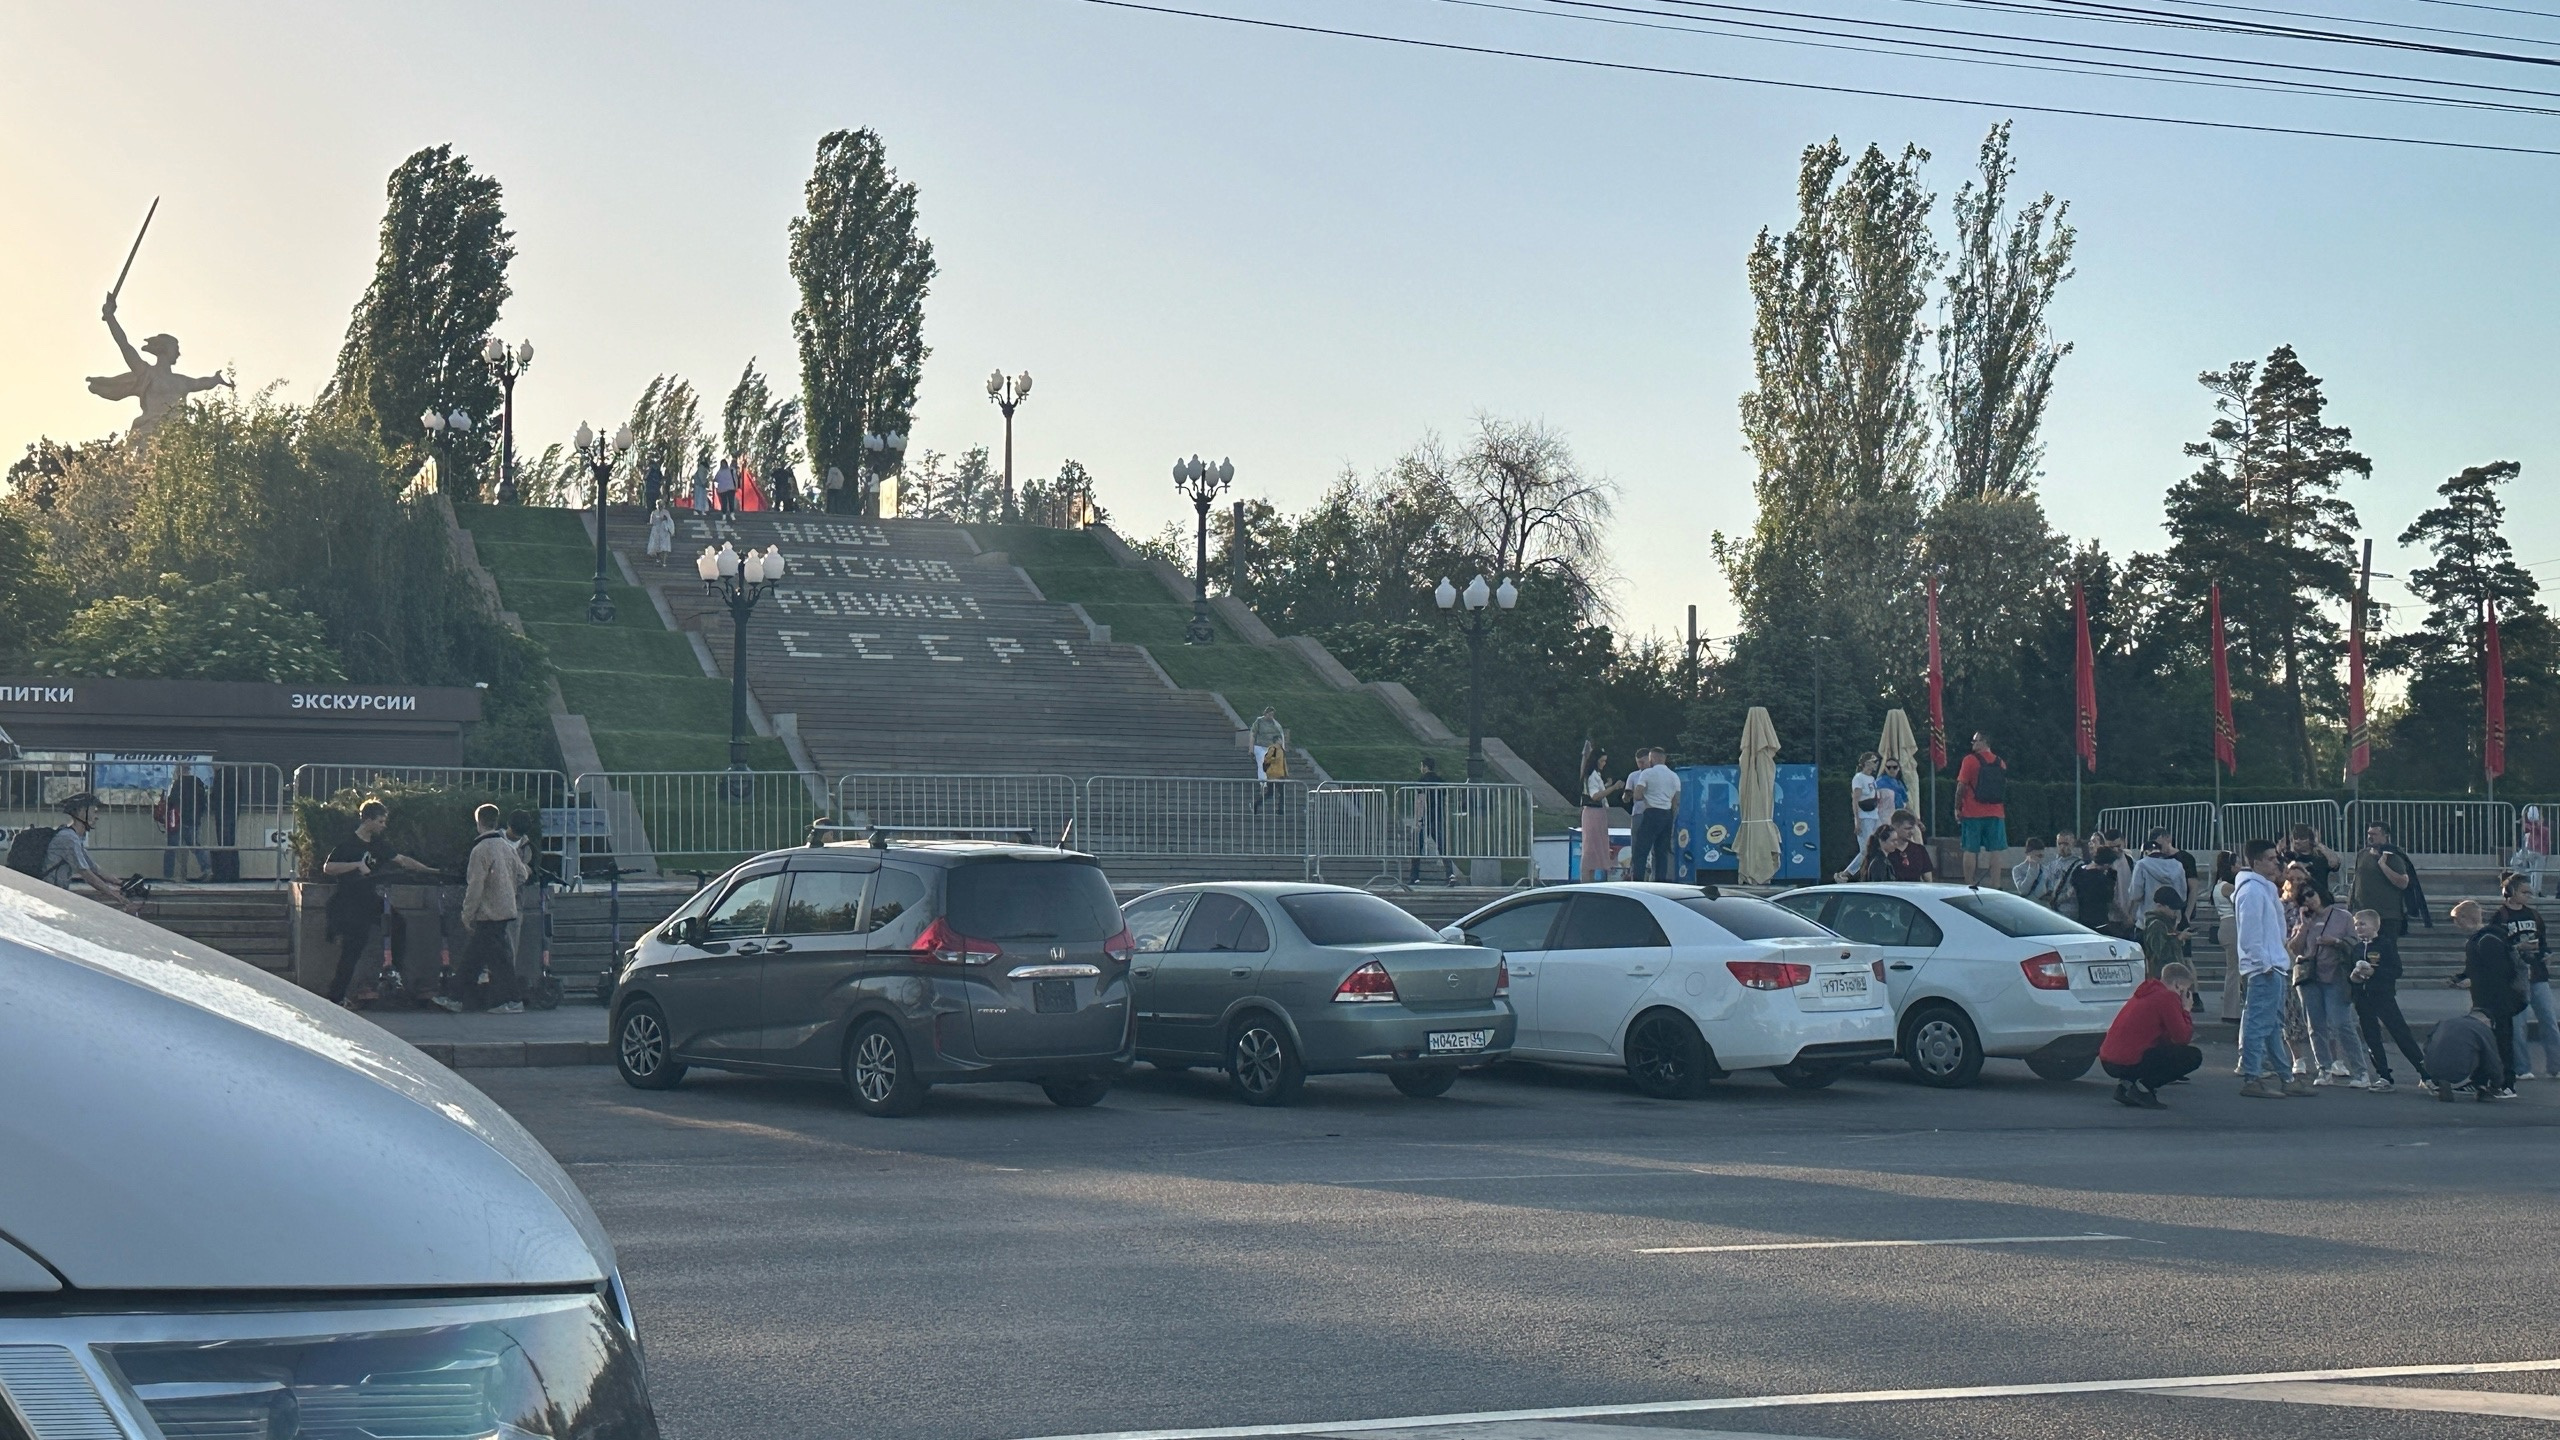 Обещали же свободный доступ: в Волгограде огораживают от людей Мамаев курган